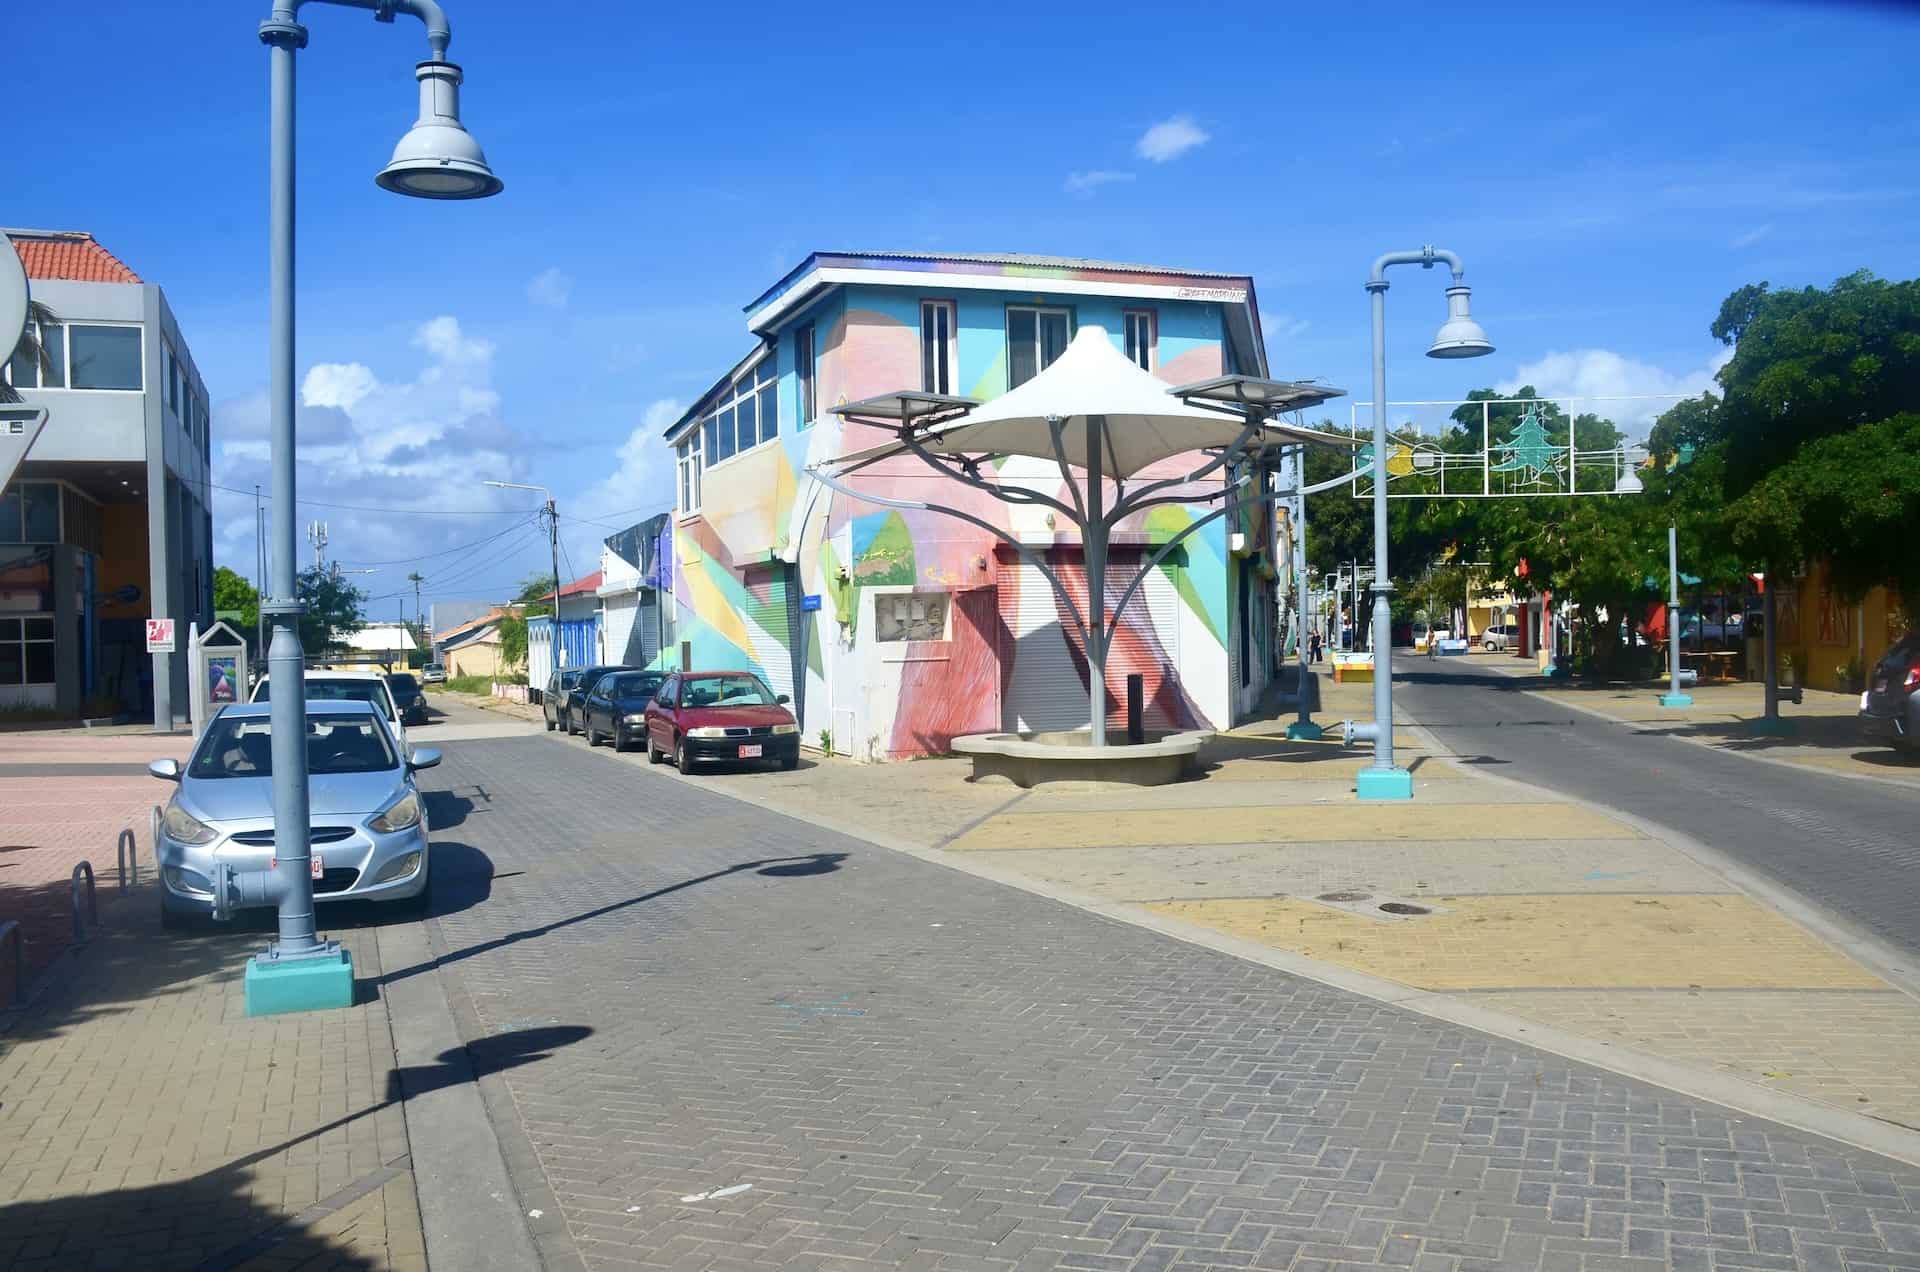 Building with murals in San Nicolas, Aruba